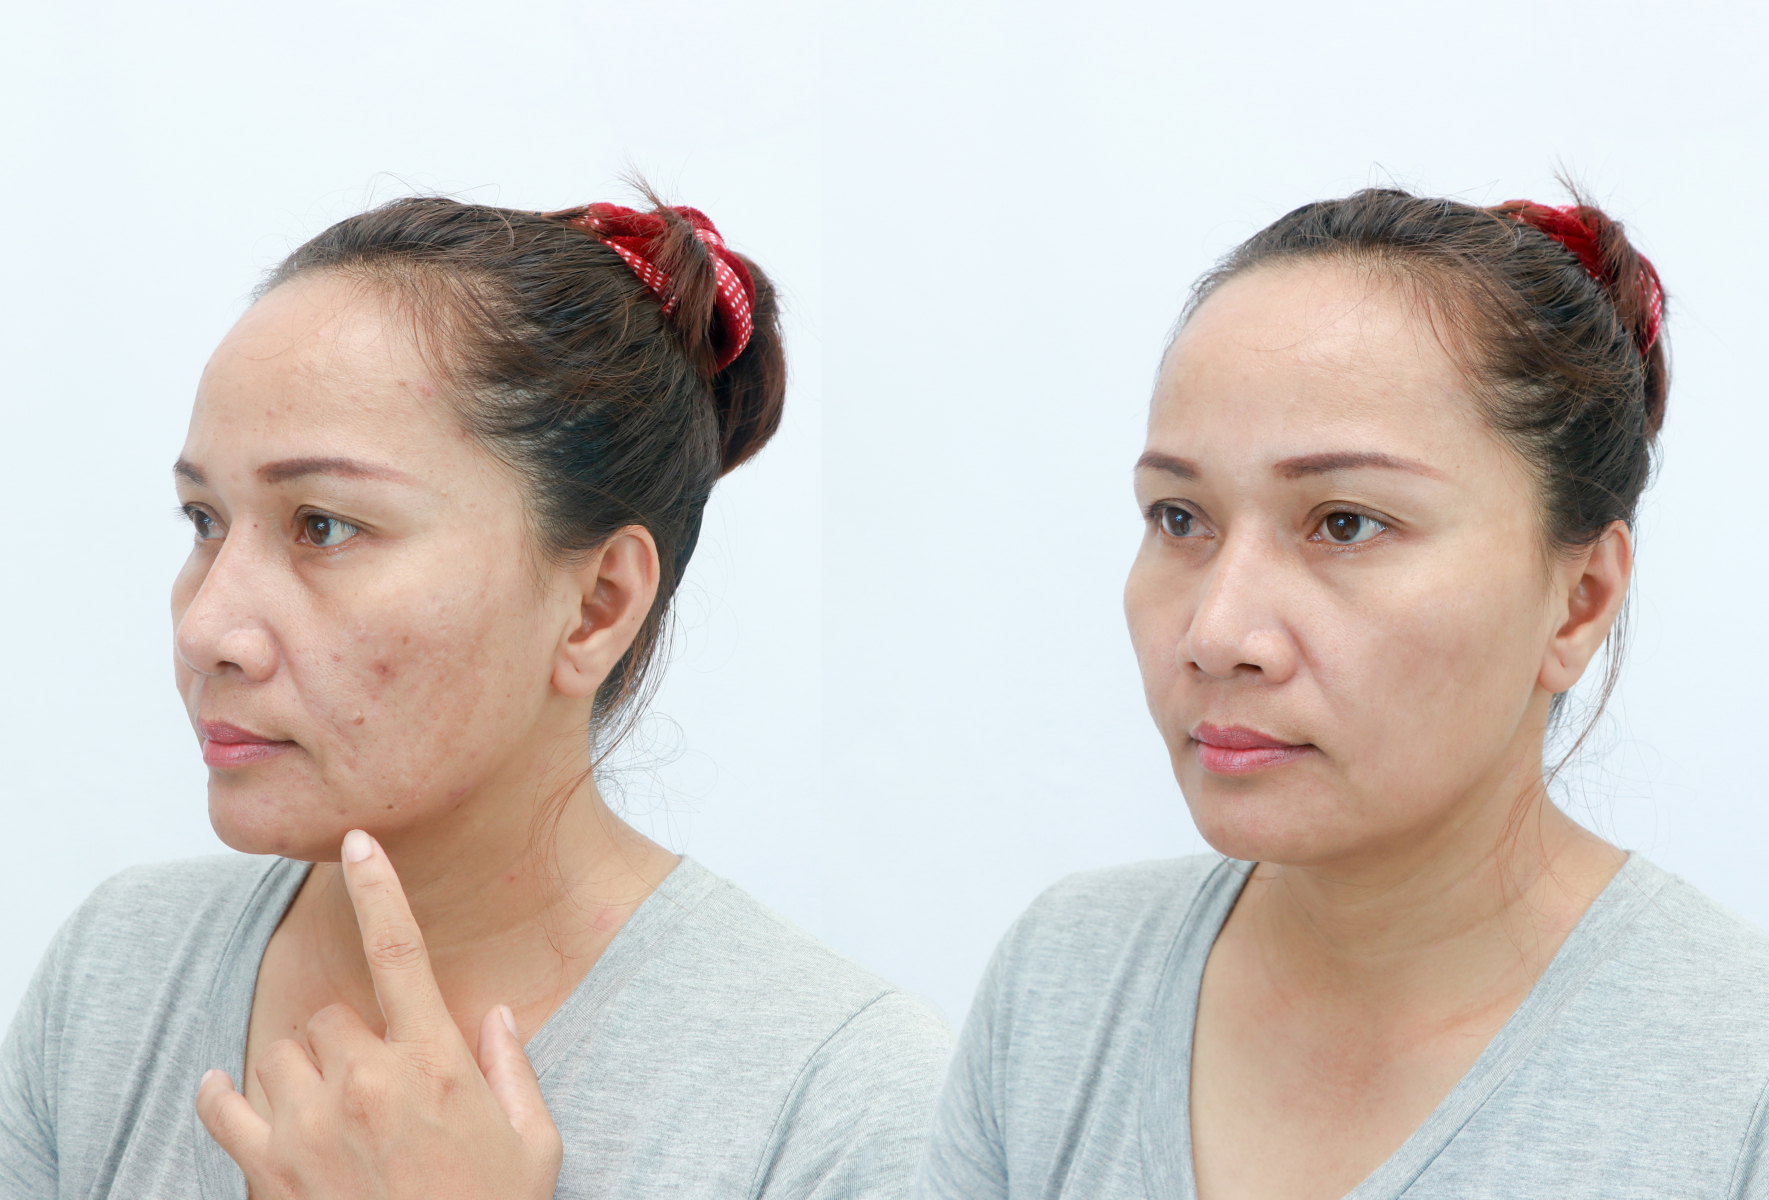 Phương pháp căng chỉ vàng cho da mặt đang được coi là một trong những dịch vụ an toàn và hiệu quả nhất hiện nay.